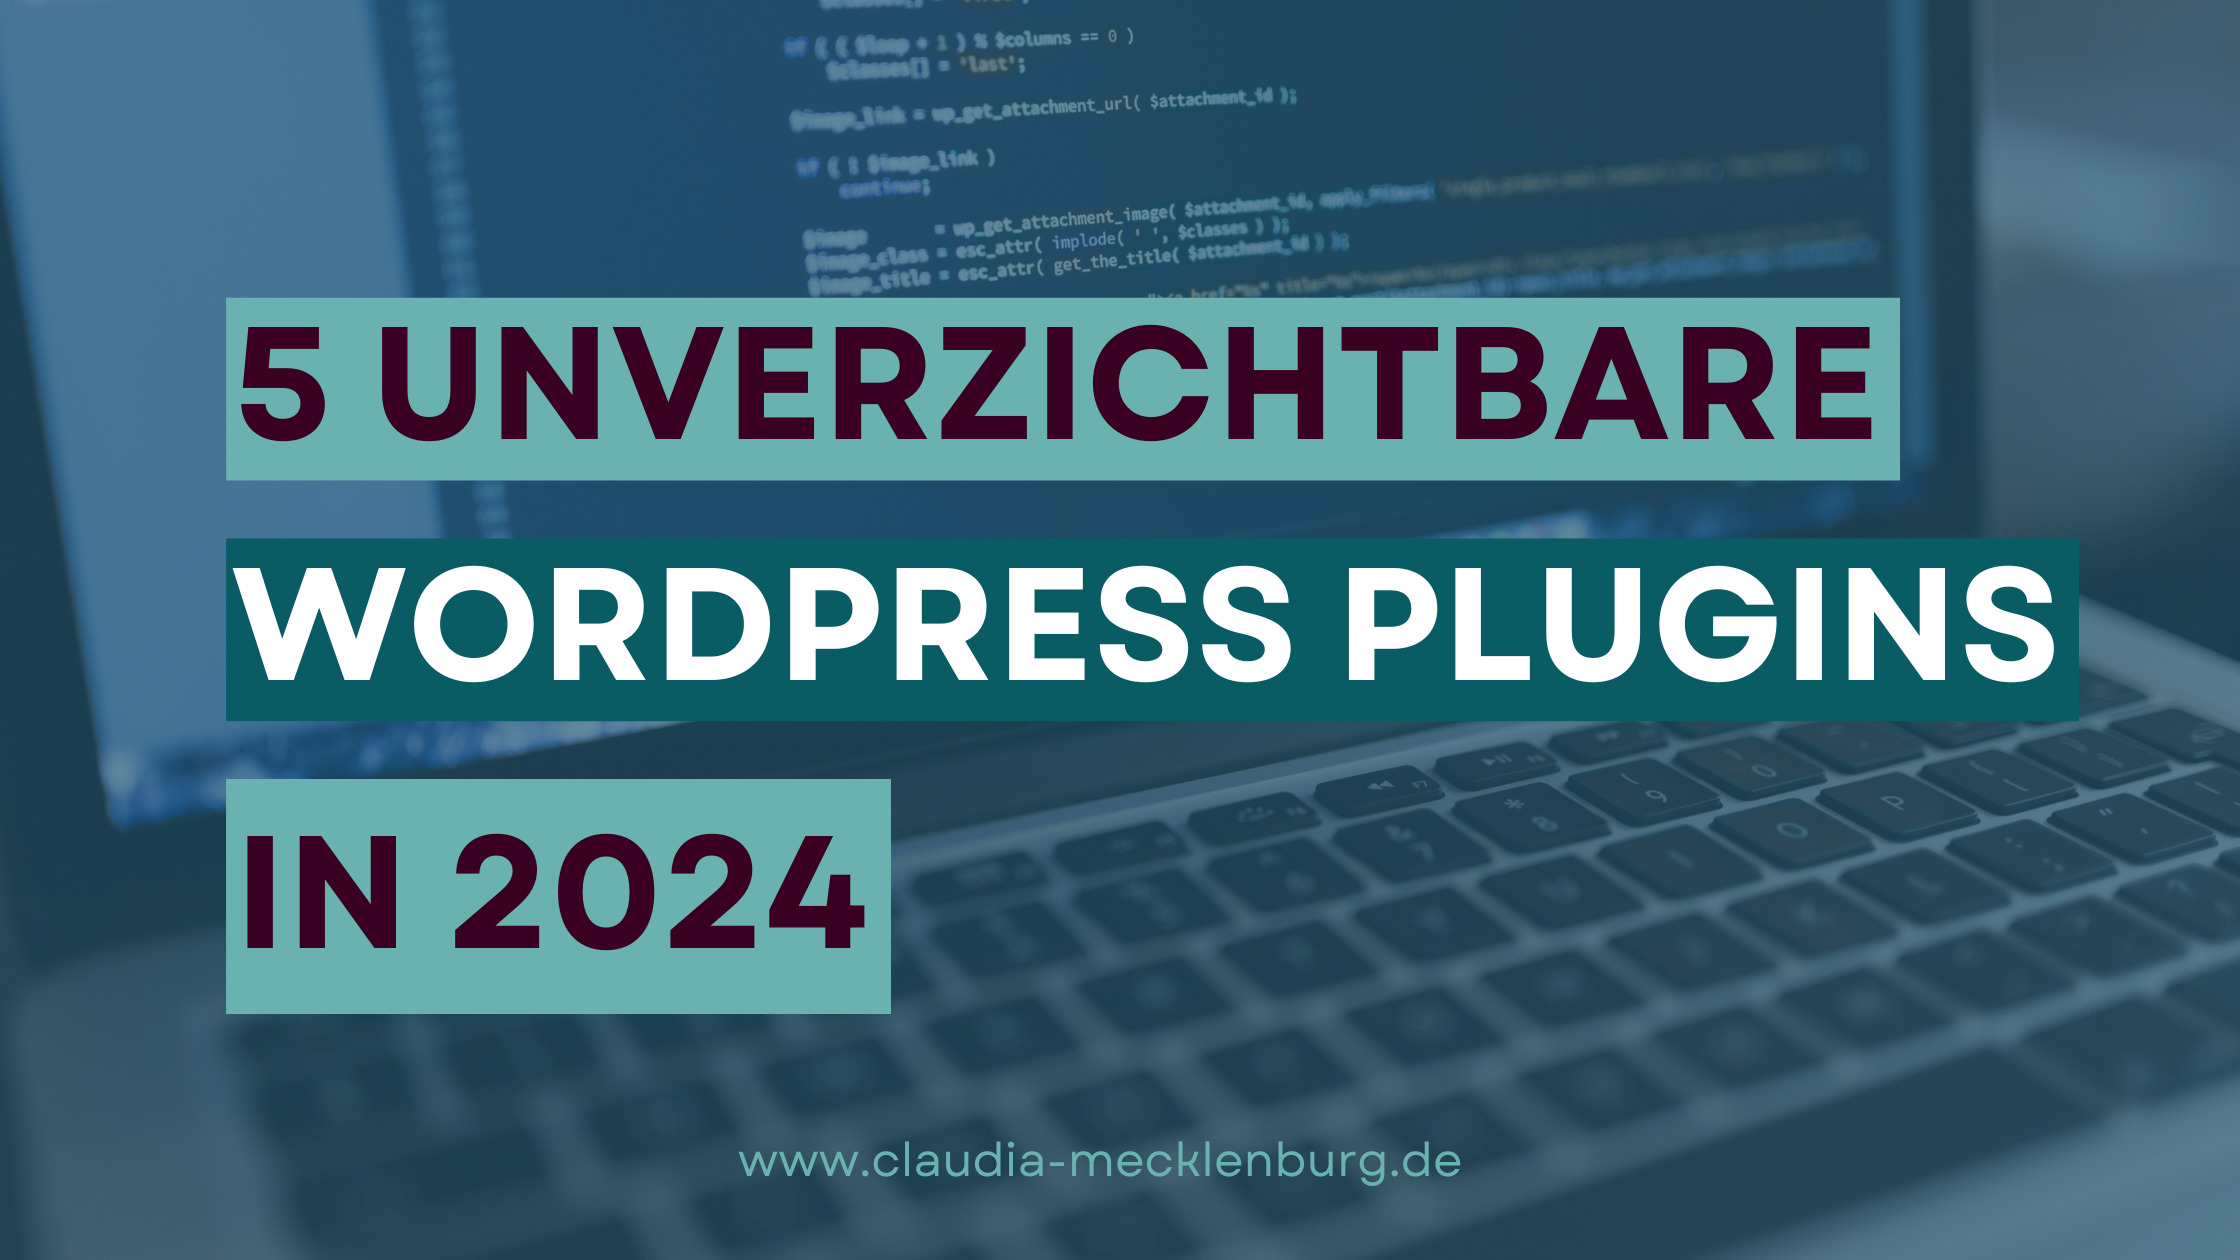 Bild von einem Laptop mit einem türkisen Overlay. Darauf steht der Titel des Blogbeitrags "5 unverzichtbare WordPress Plugins in 2024"